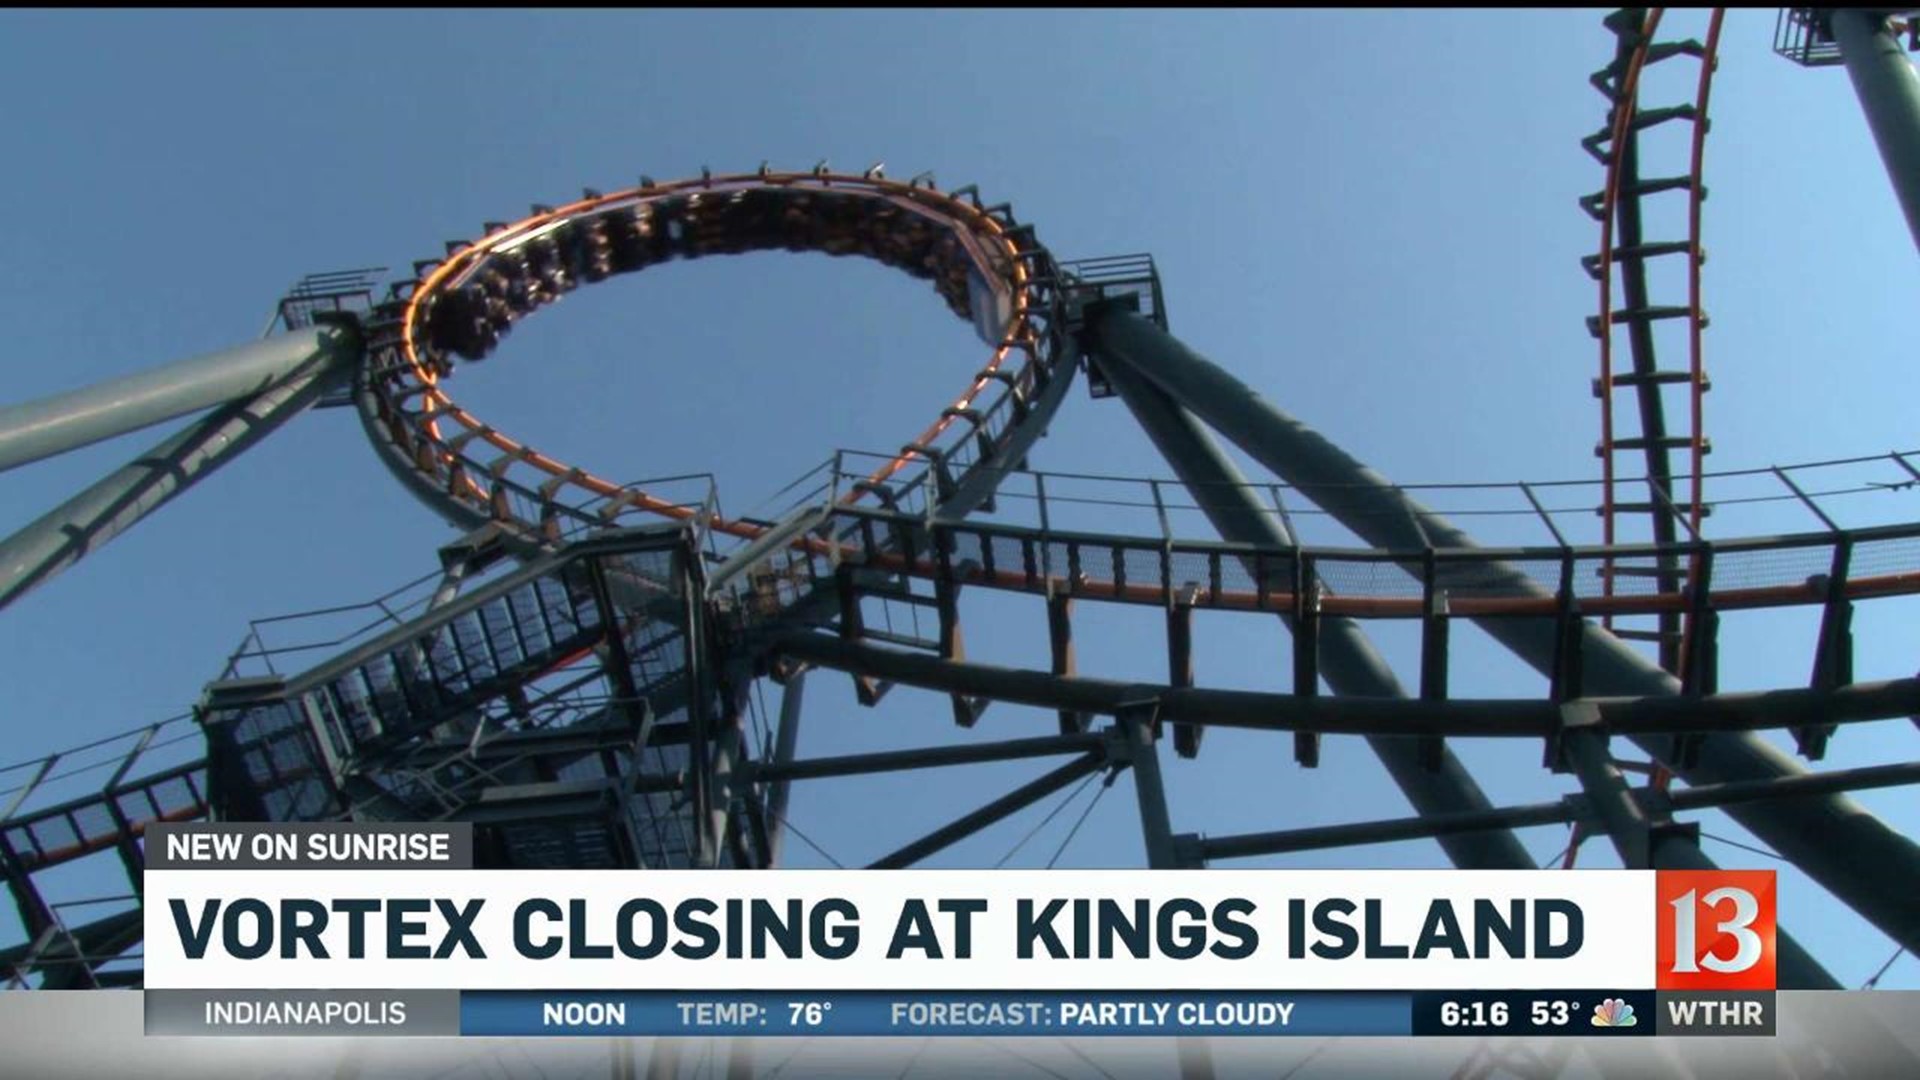 Vortex closing at Kings Island